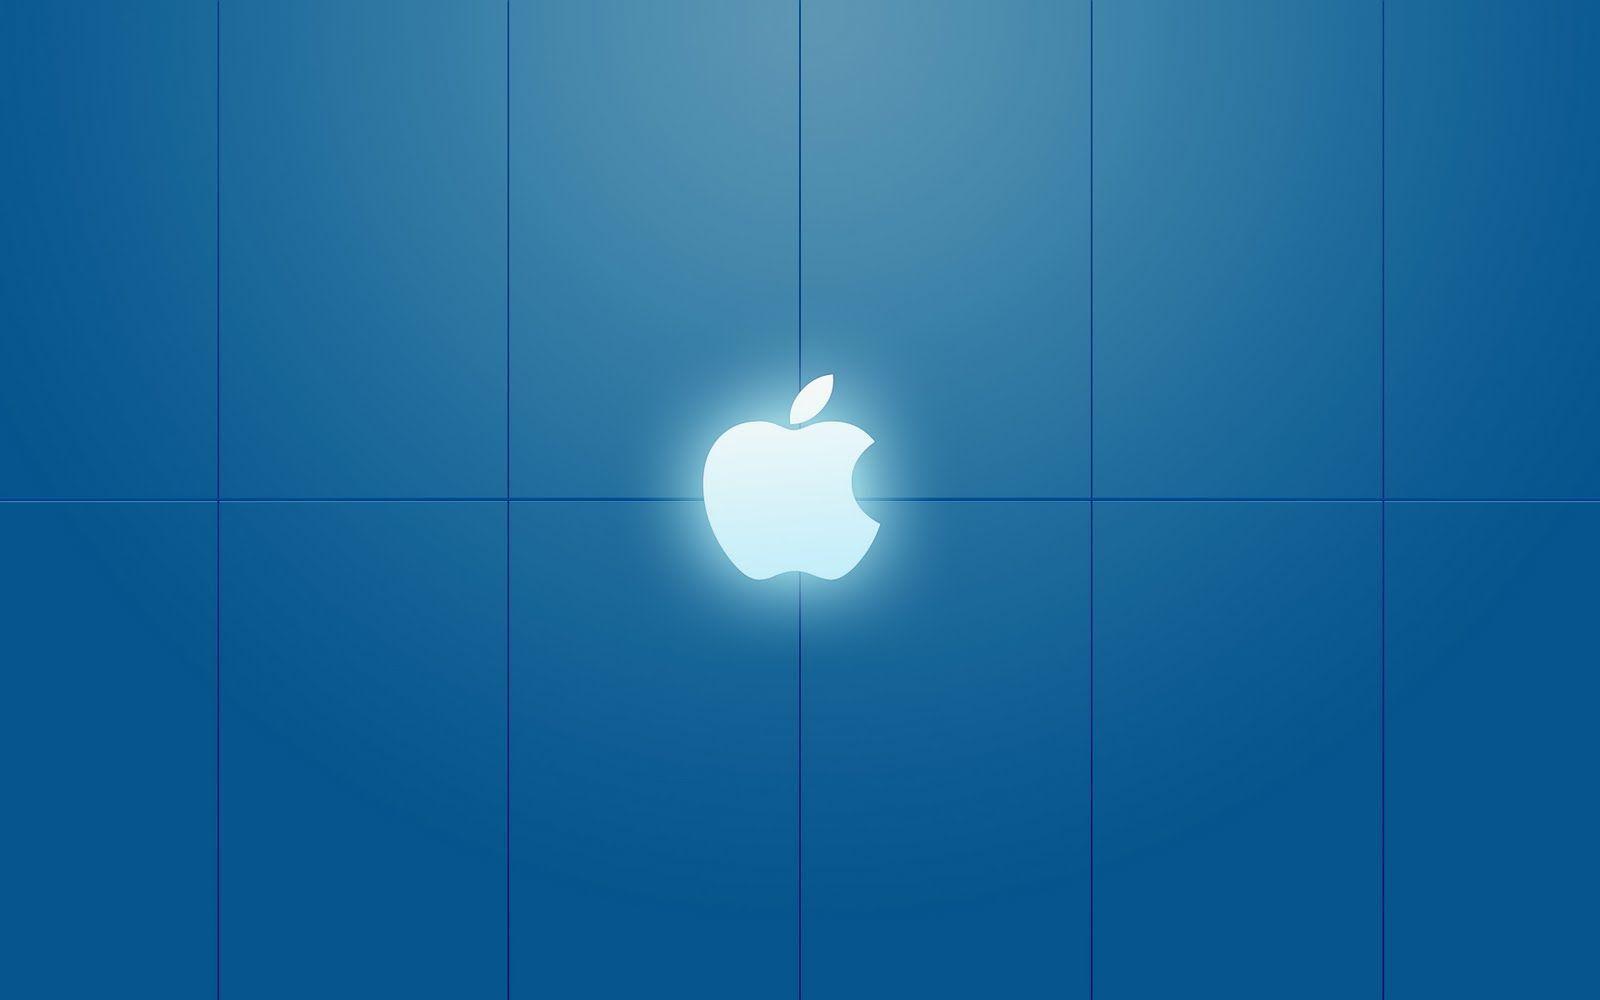 Apple Mac Wallpaper HD Blue Wallpaper. awshdwallpaper